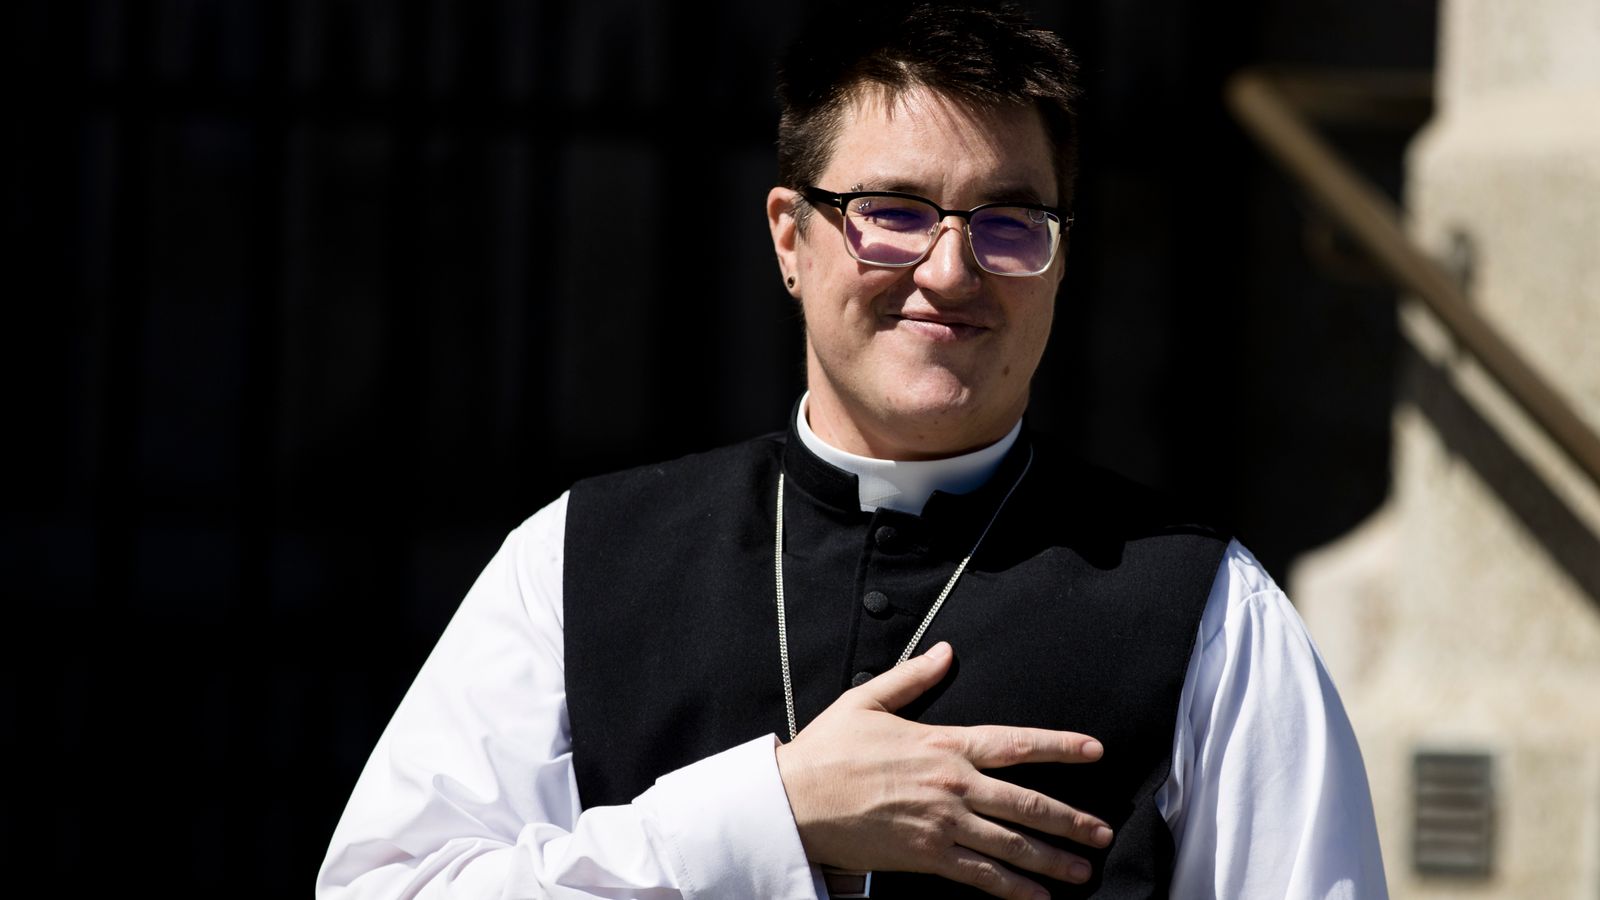 Епископом церкви в США впервые стал трансгендер